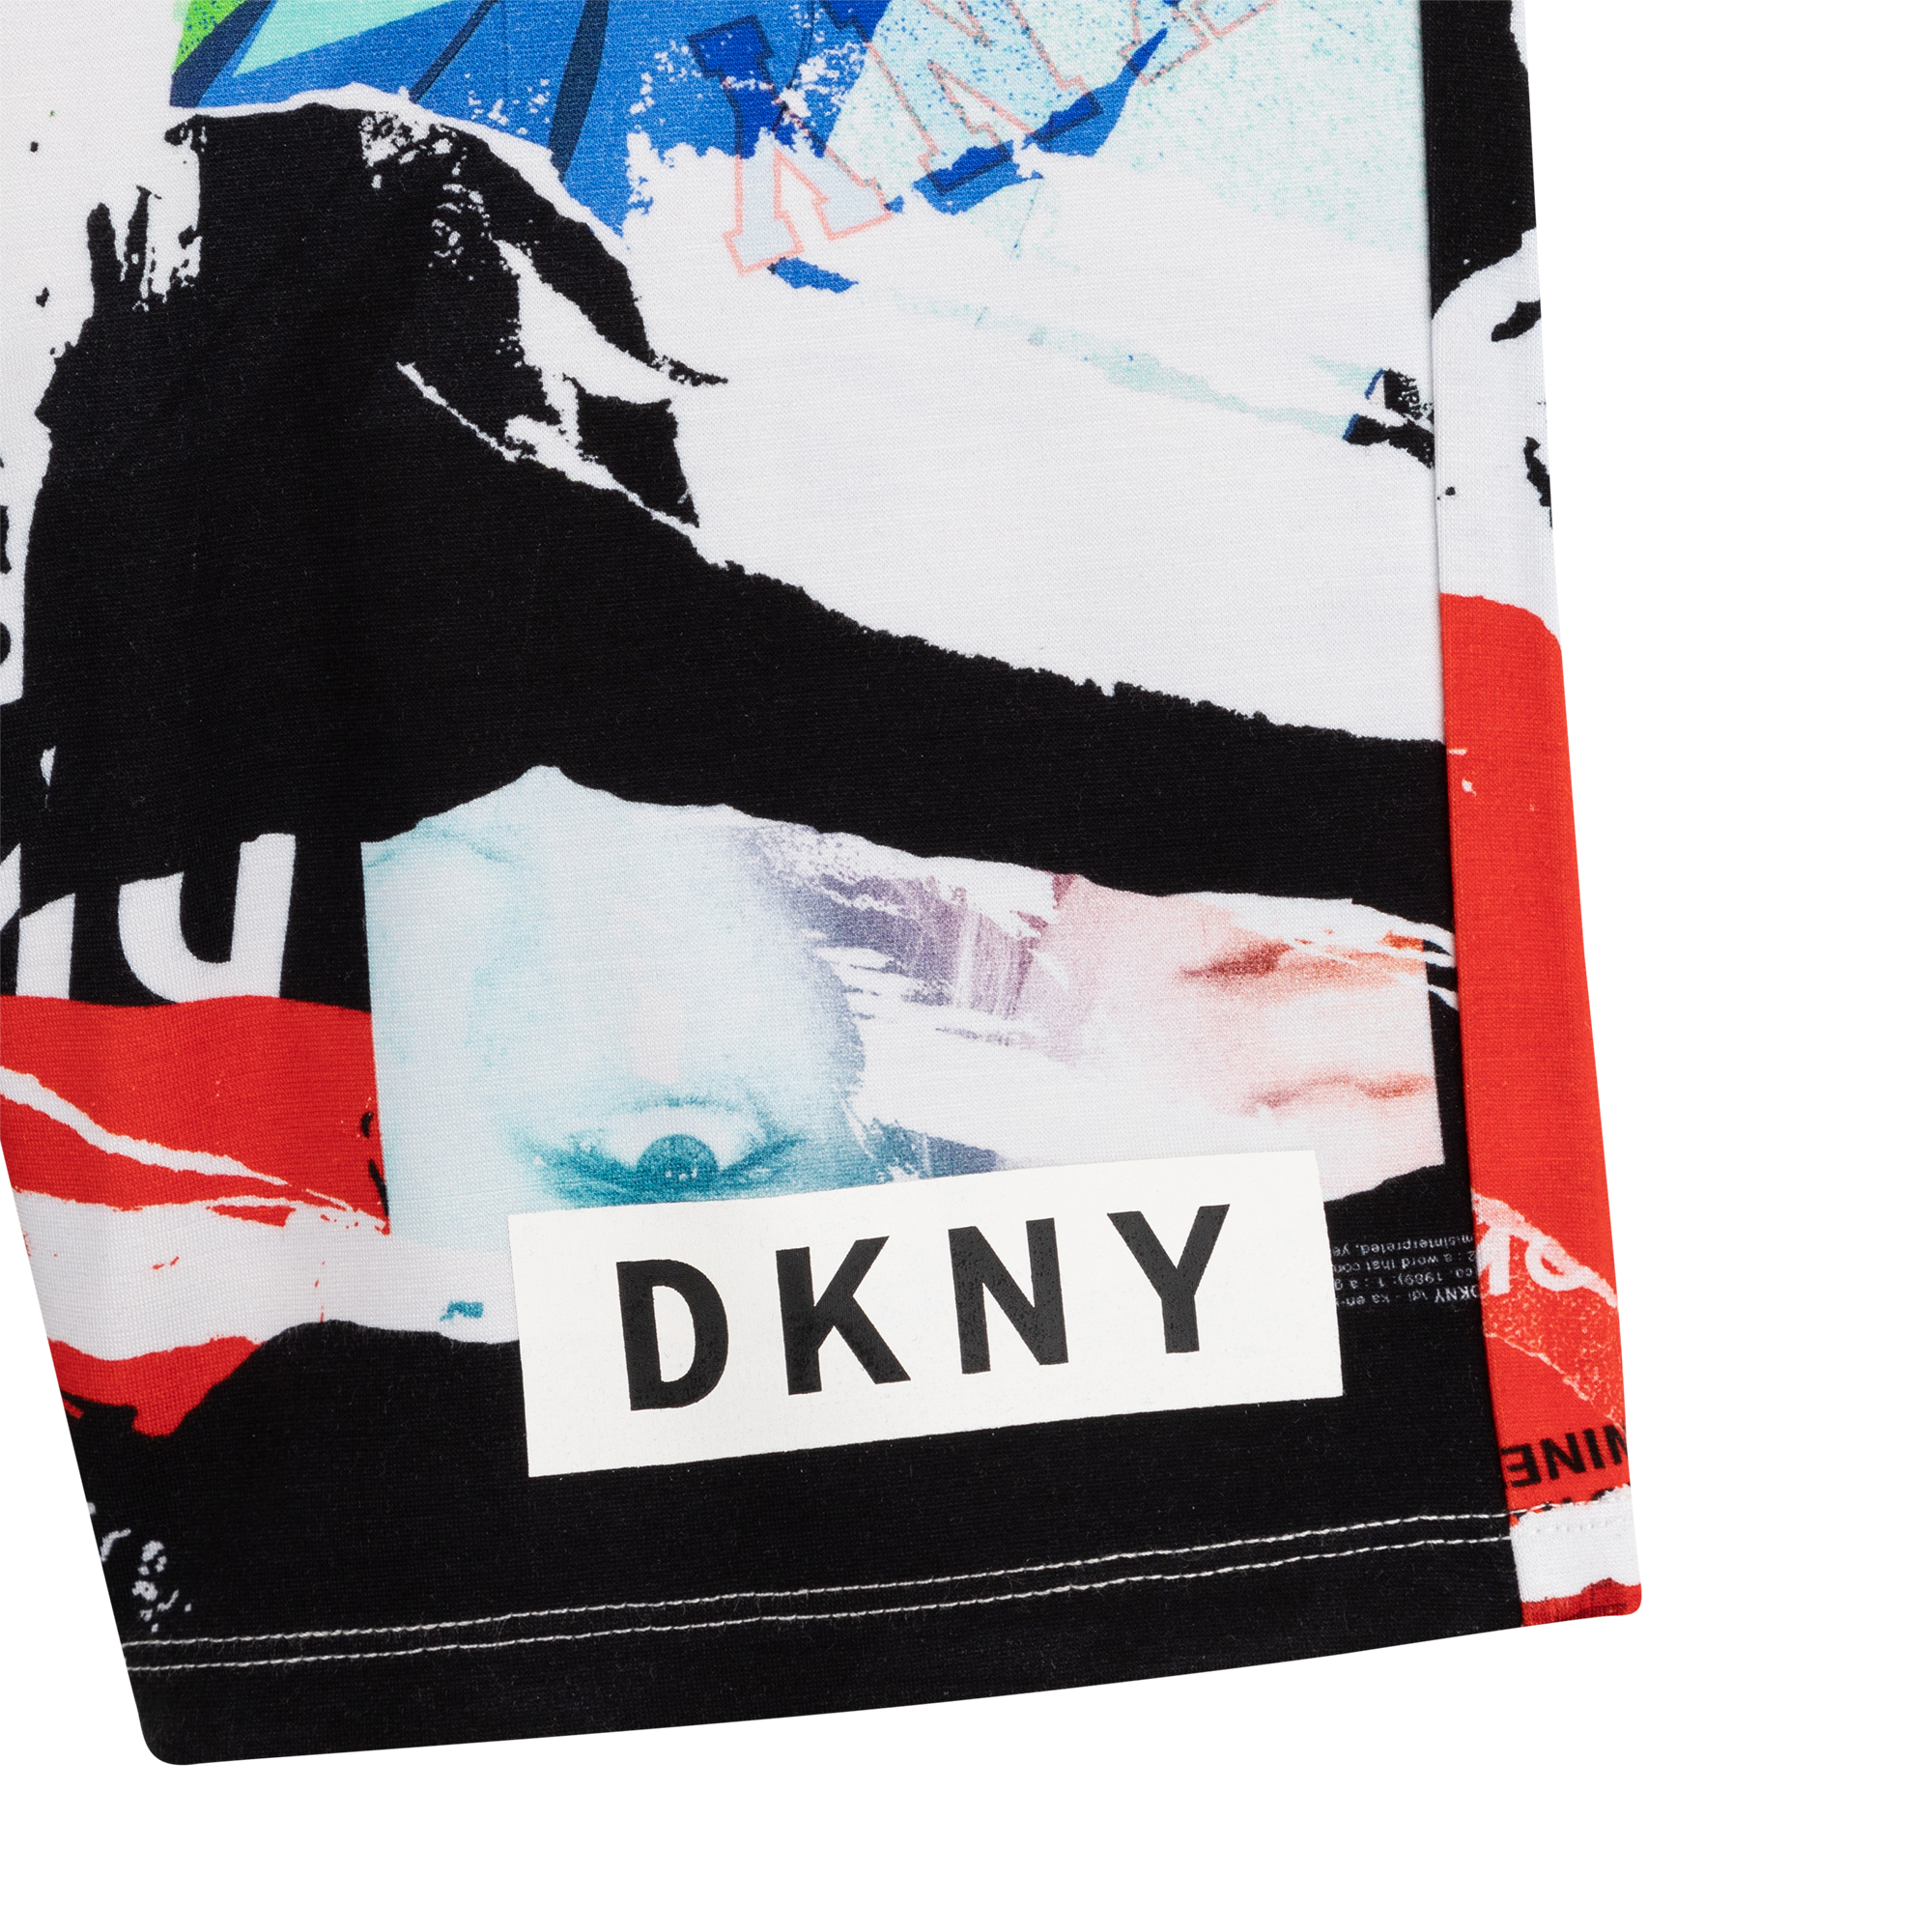 Fluid printed bermuda shorts DKNY for BOY